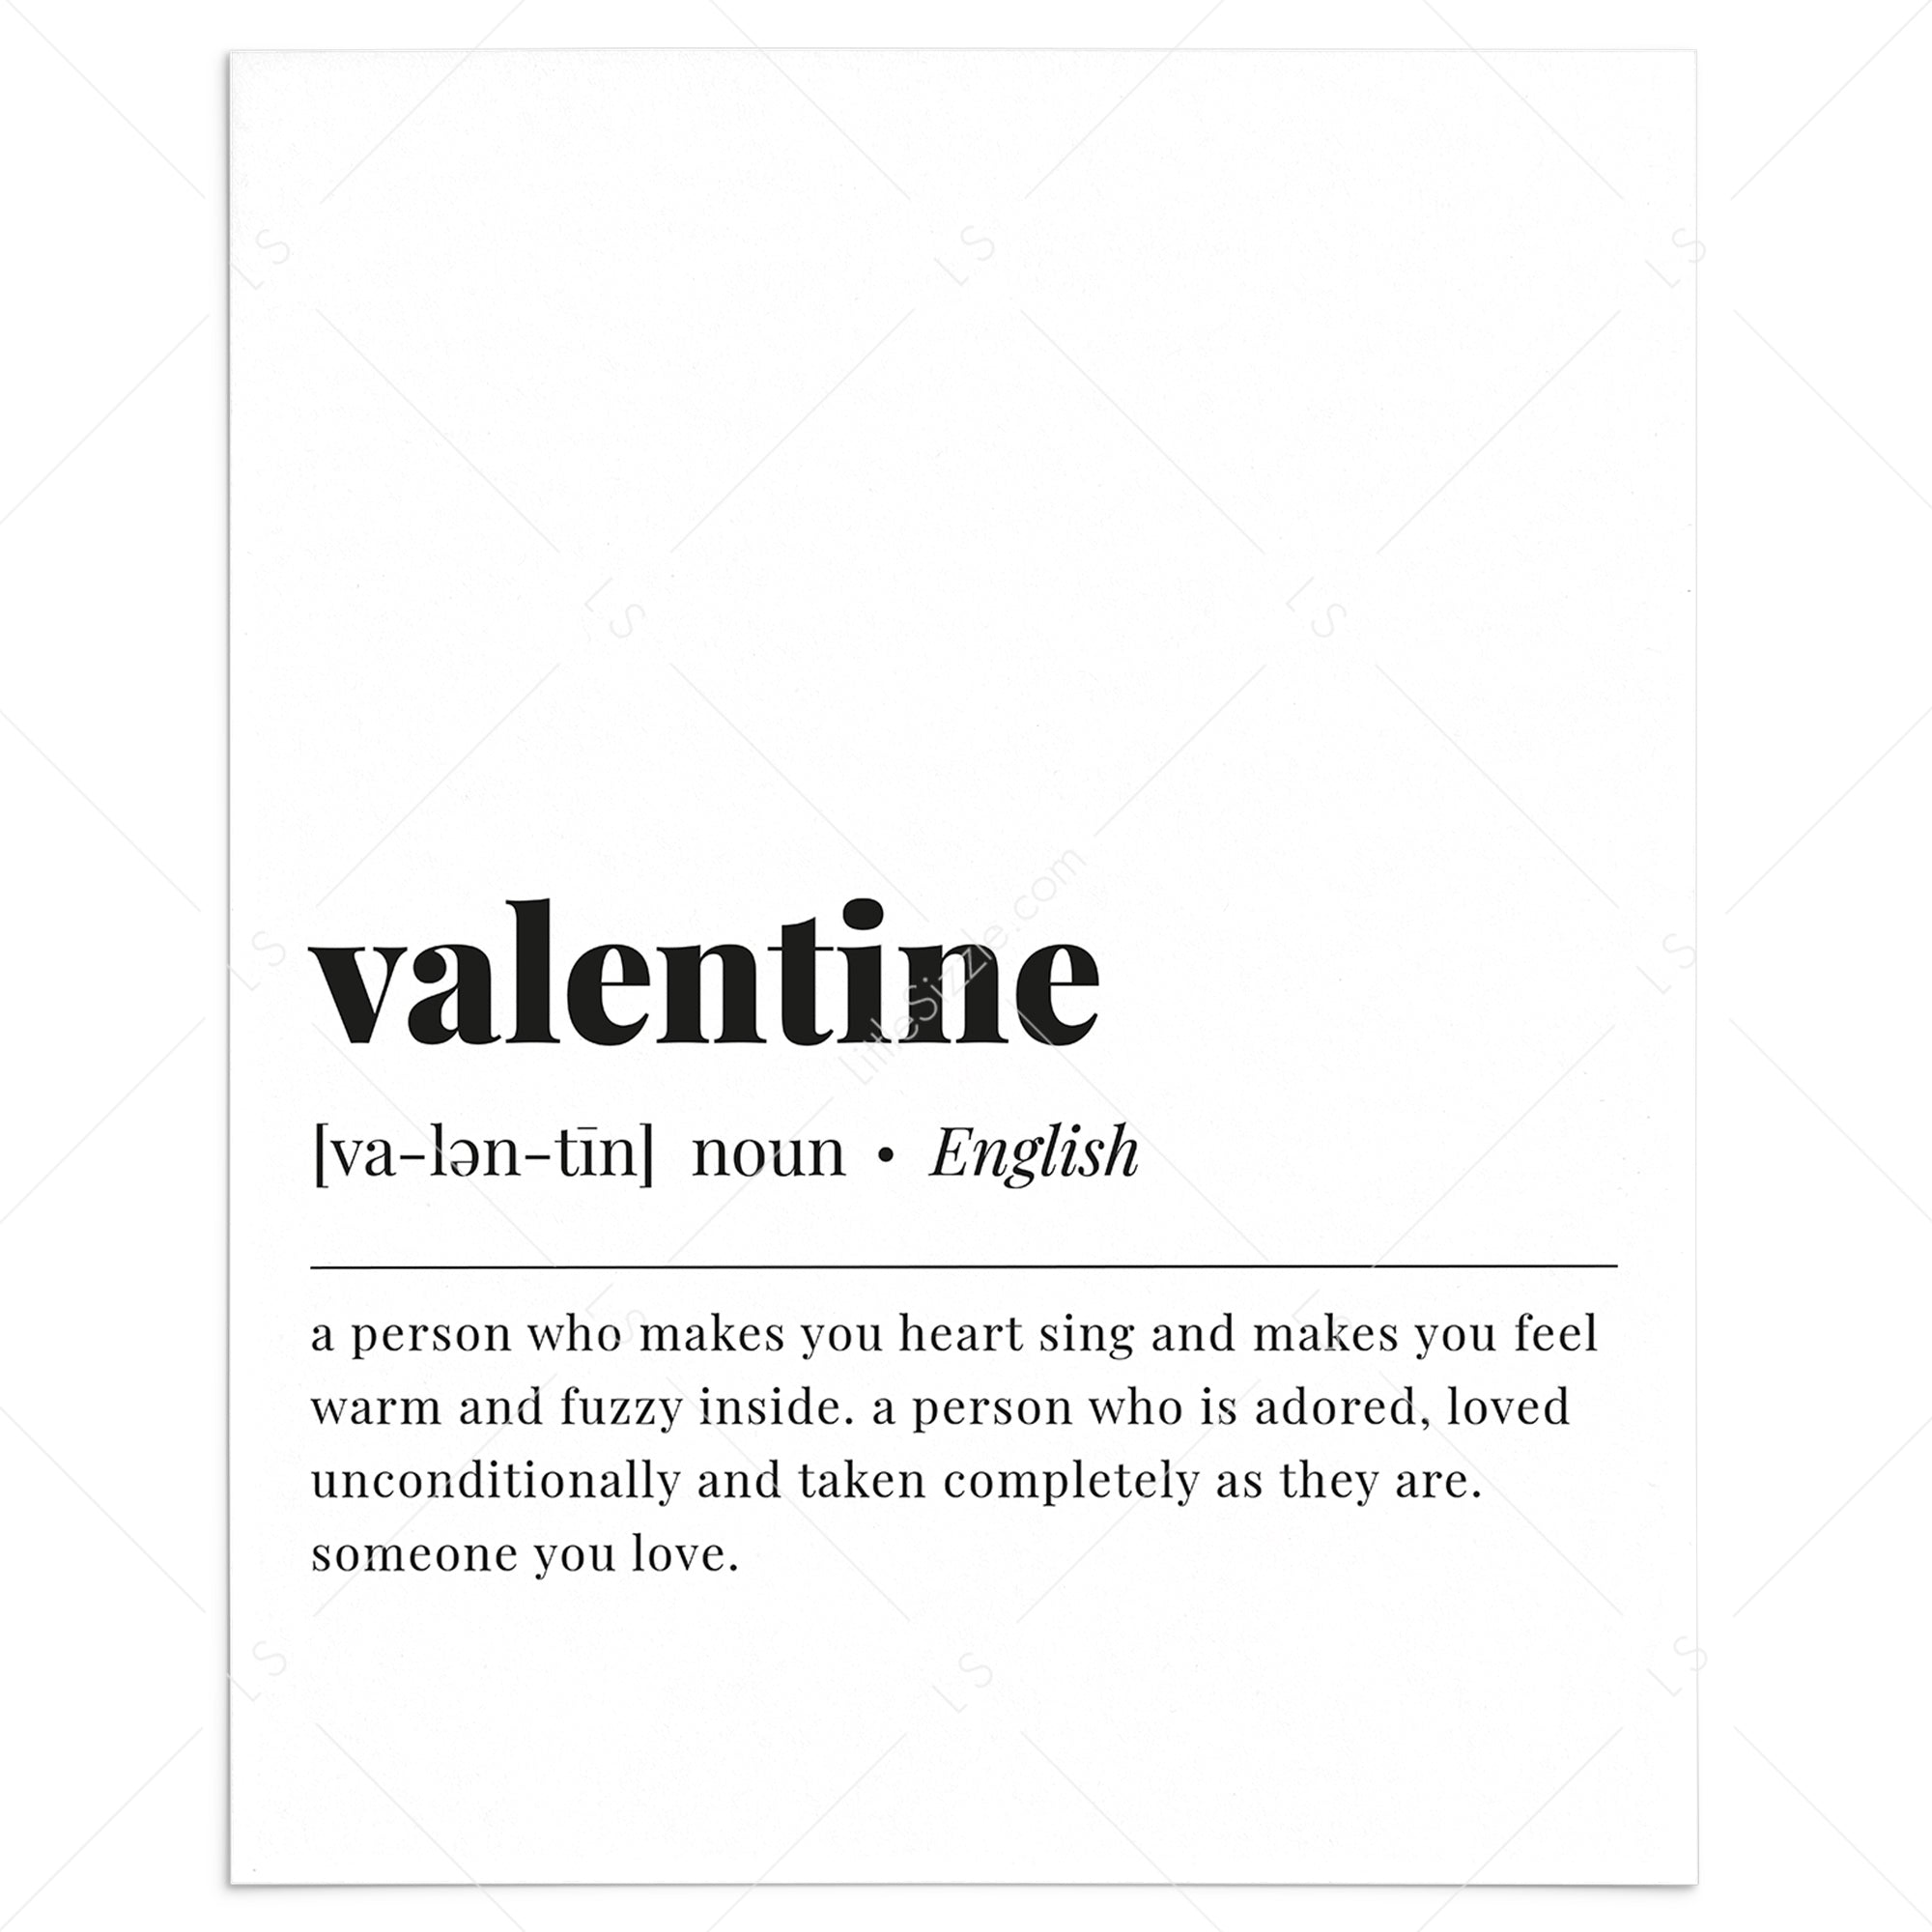 Valentine definition